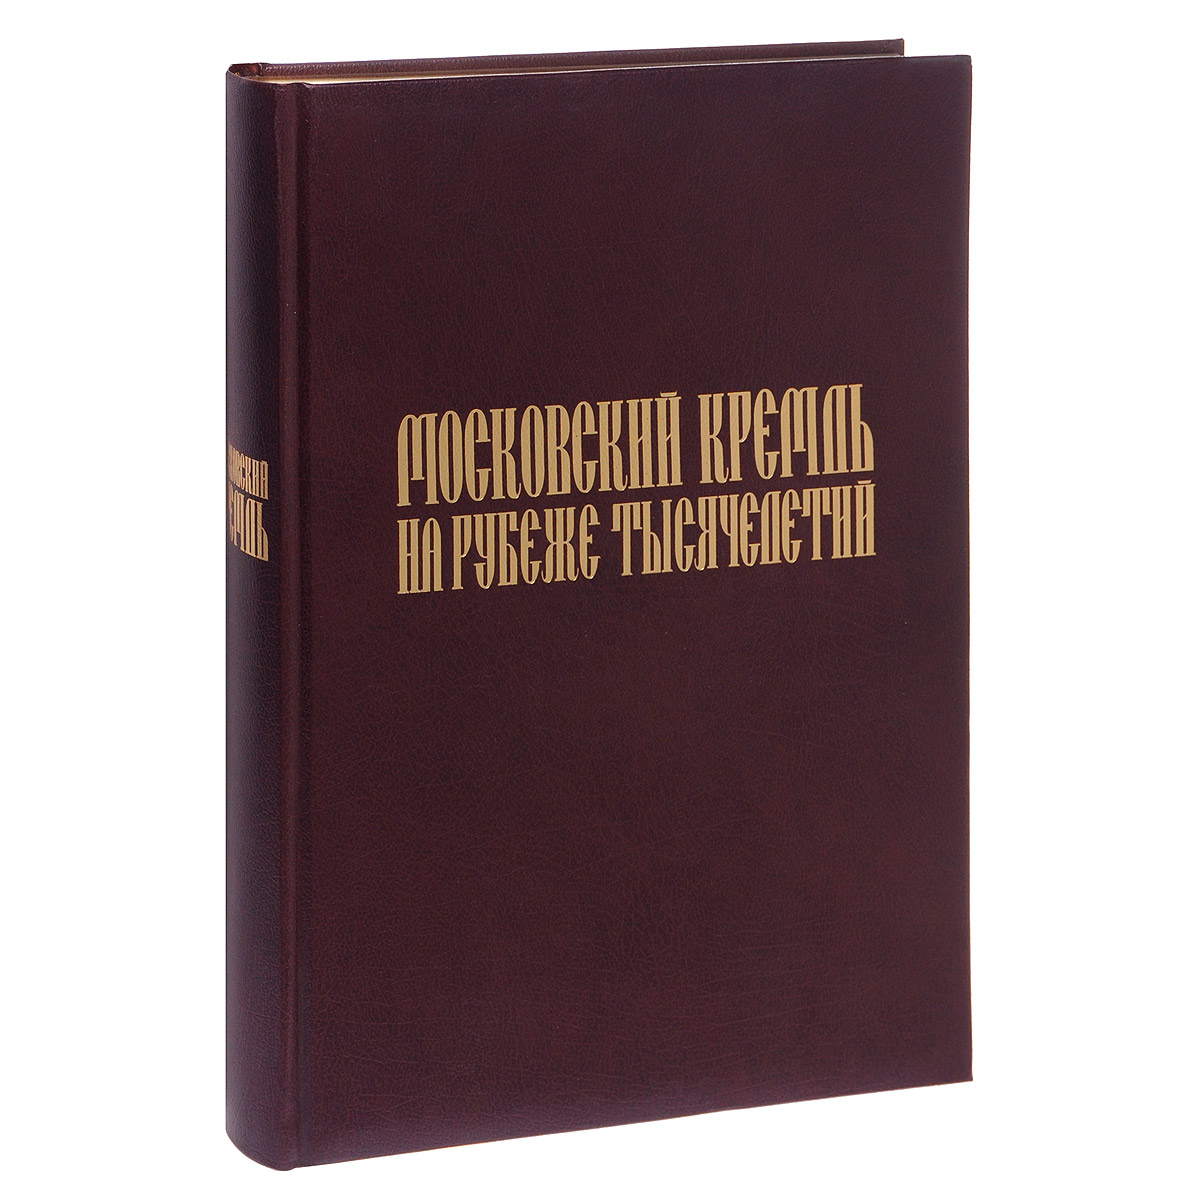 Московский Кремль на рубеже тысячелетий (подарочное издание)